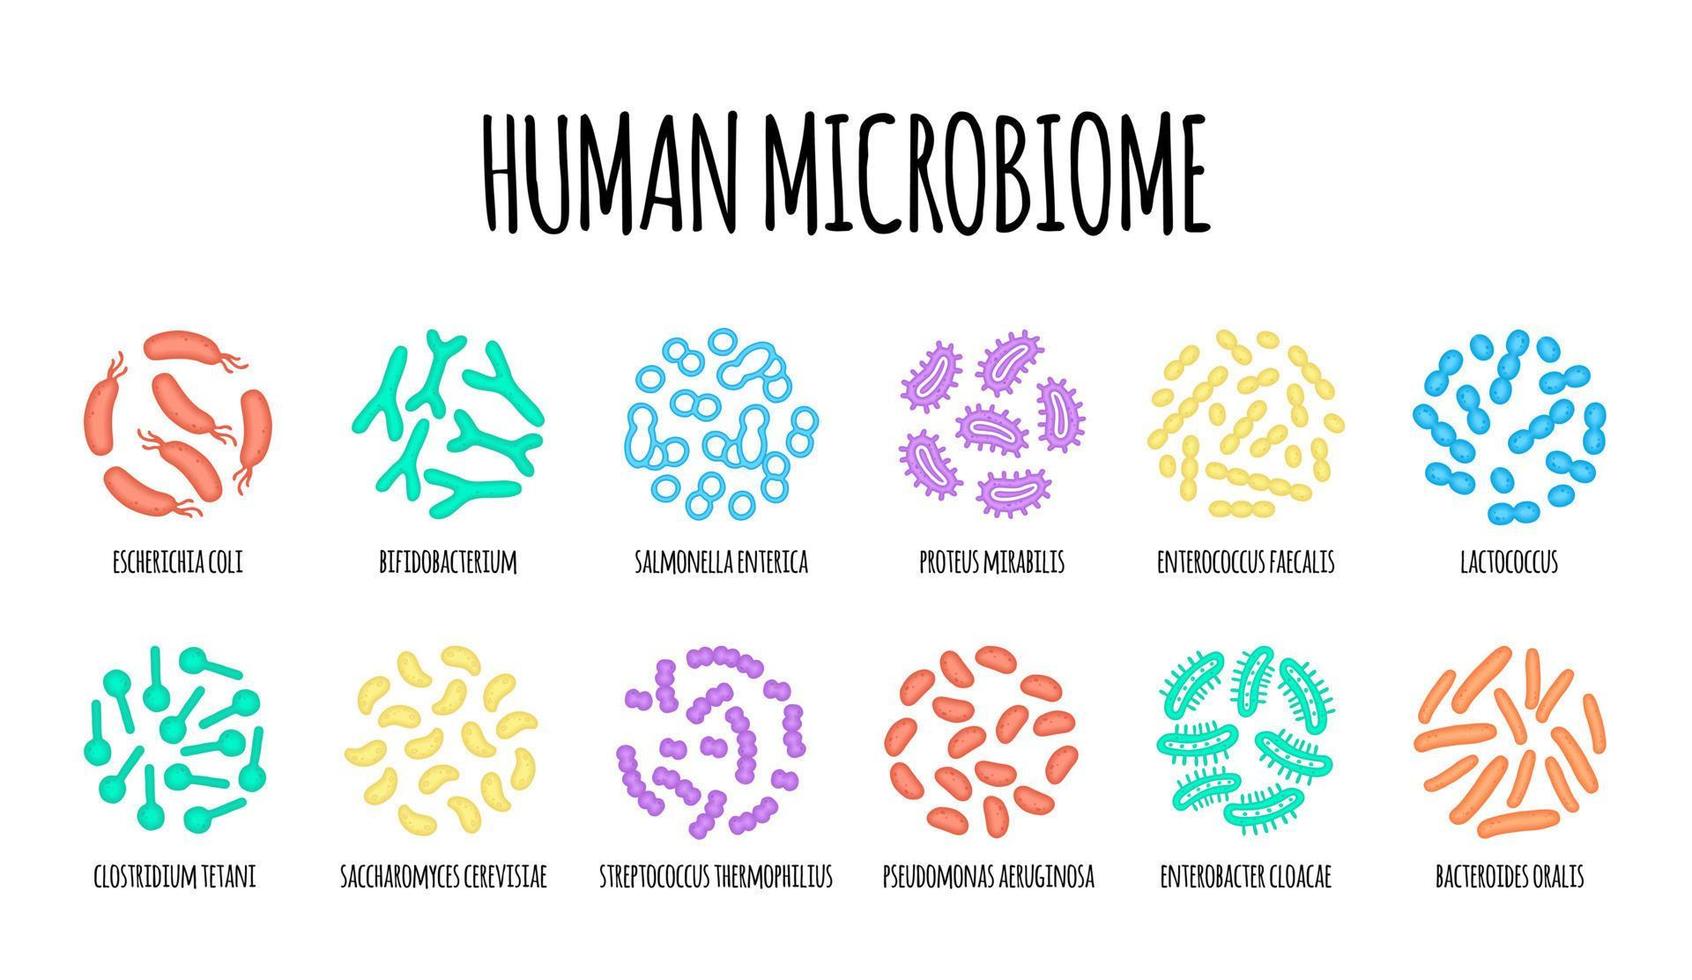 mänsklig microbiome illustration av bakteriell arter. vektor bild. gastroenterolog. bifidobakterier, laktobaciller. mjölk- syra bakterie. illustration i en platt stil.